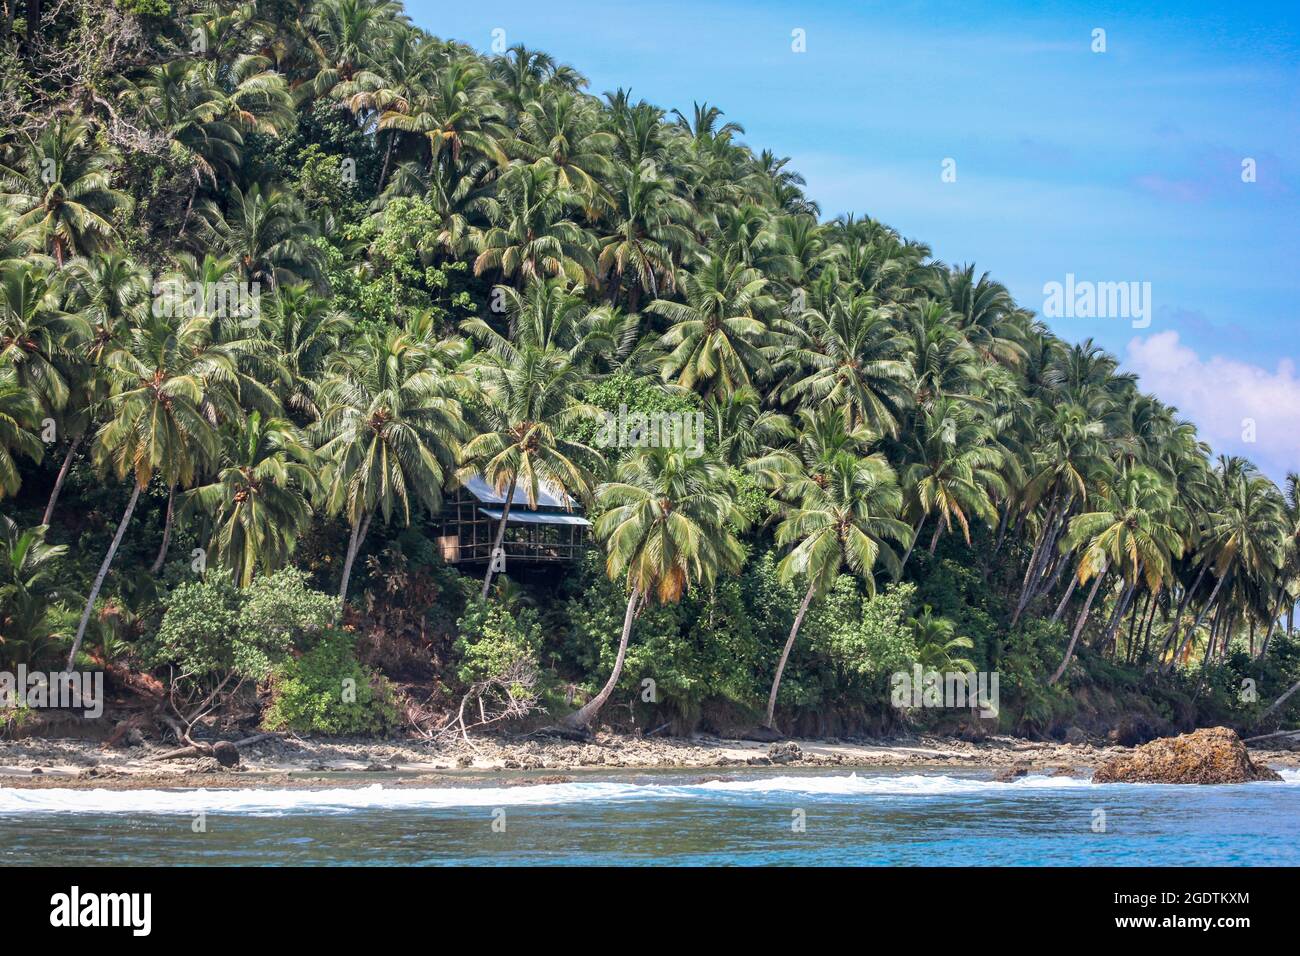 Eine Strandhütte auf einem Kokosnusshang auf den tropischen Mentawaii-Inseln - Indonesien. Dieses tropische Paradies hat einige der besten Wellen in der W Stockfoto